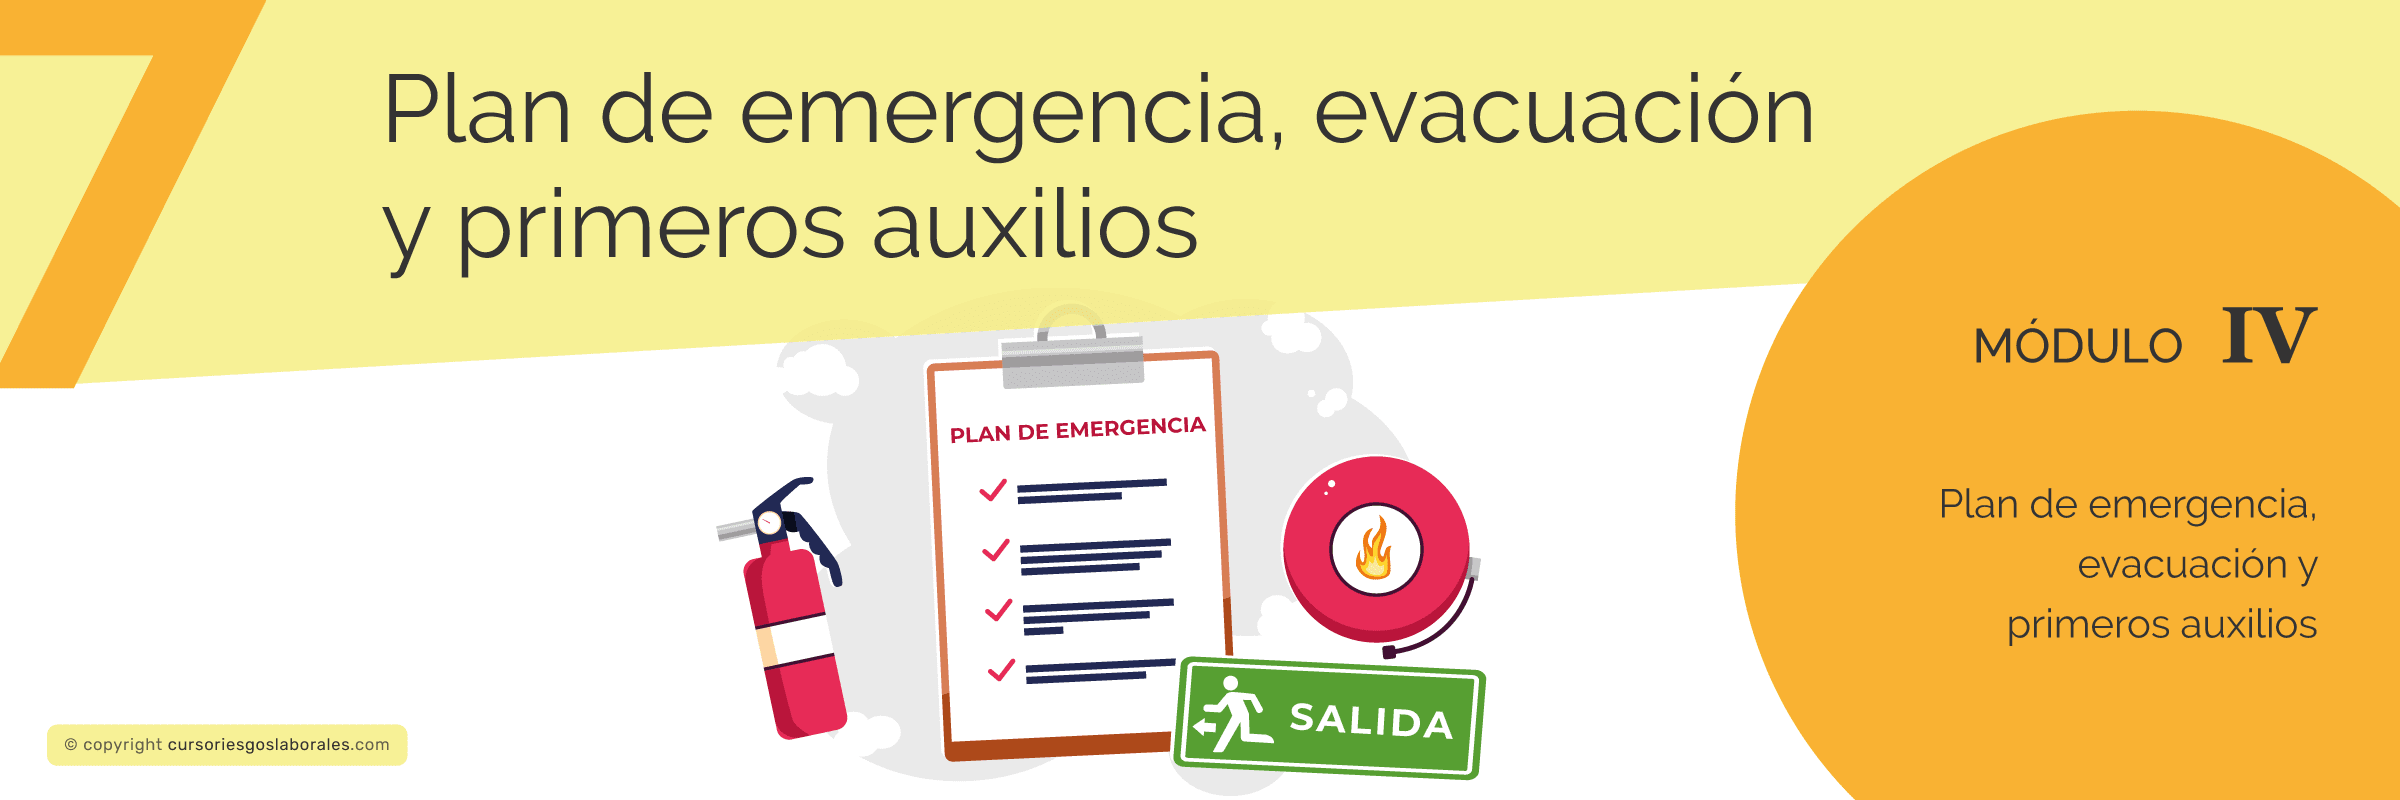 Plan de emergencia, evacuación y primeros auxilios